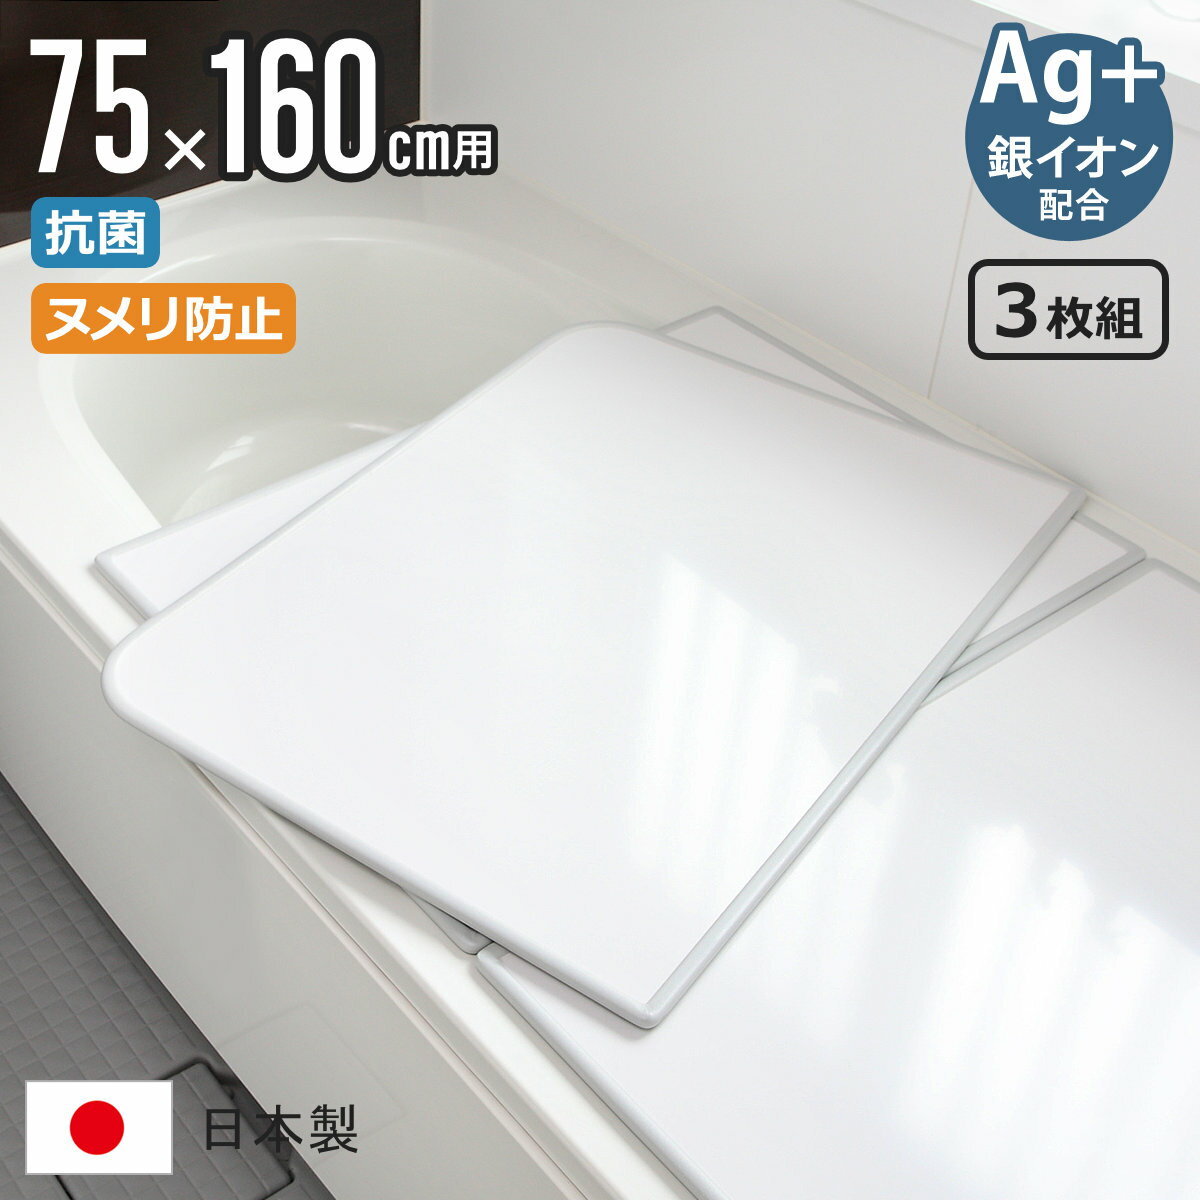 【レビュー特典付き】 風呂ふた 組み合わせ 75×160cm